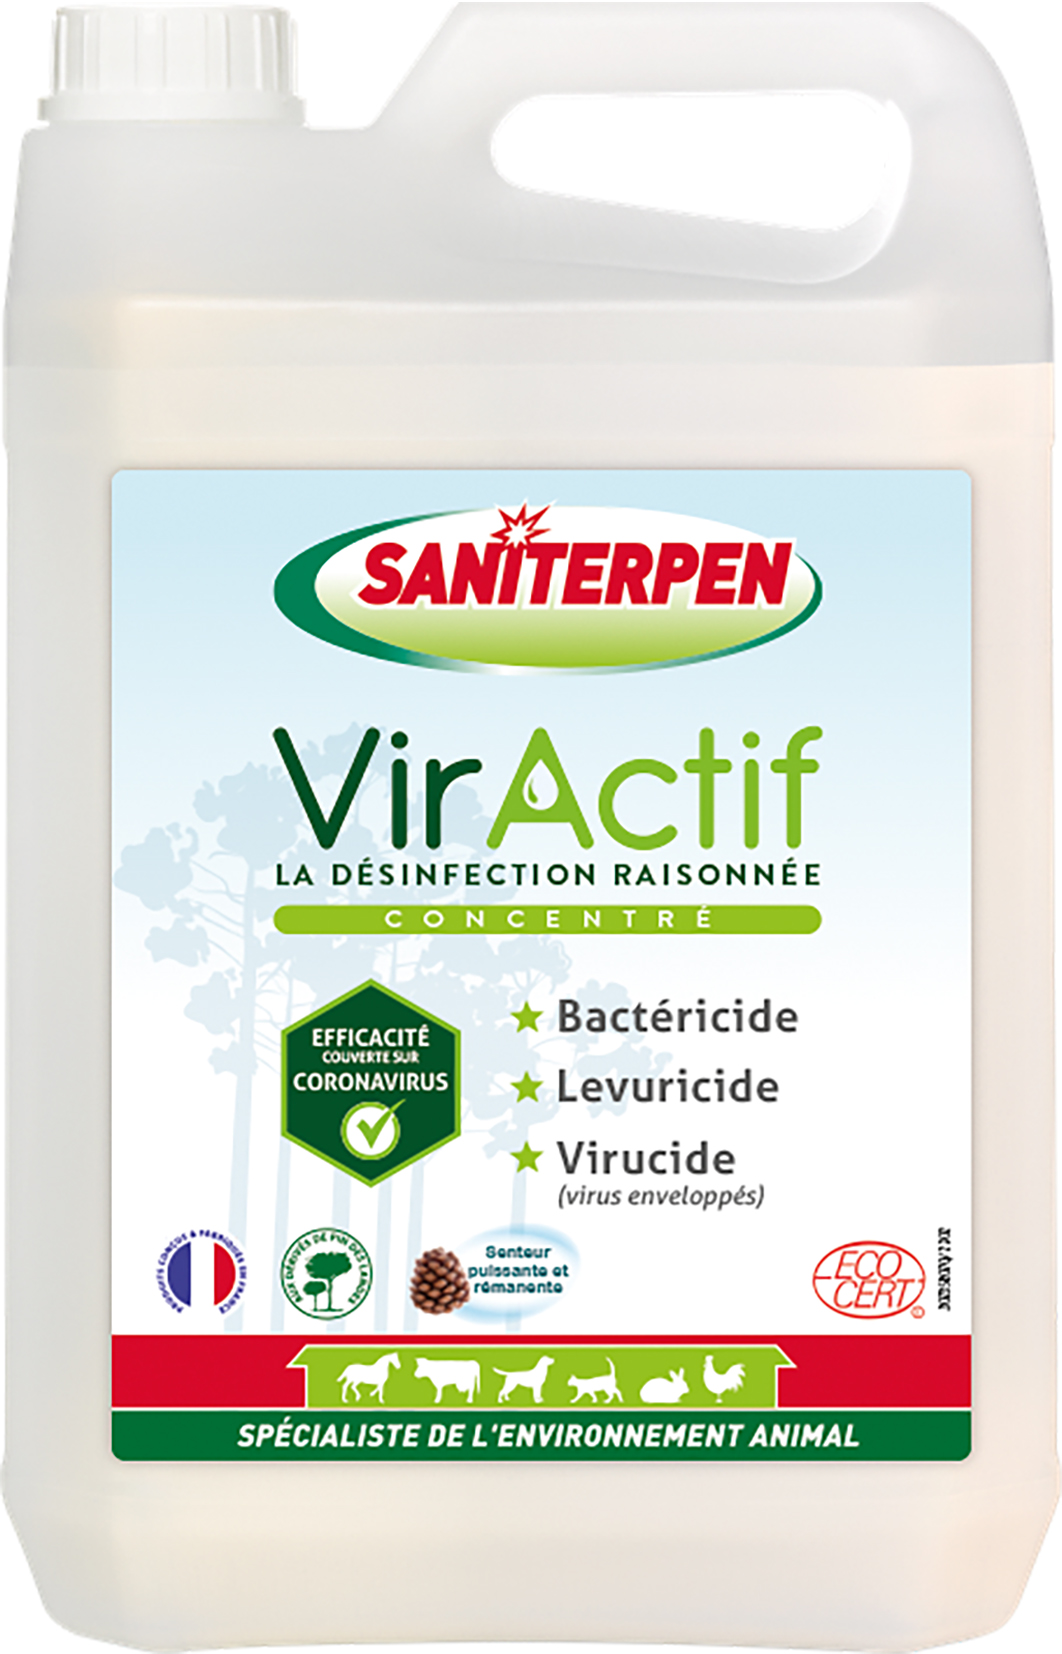 SANITERPEN VIRACTIF CONCENTRE 5L - Gamm vert